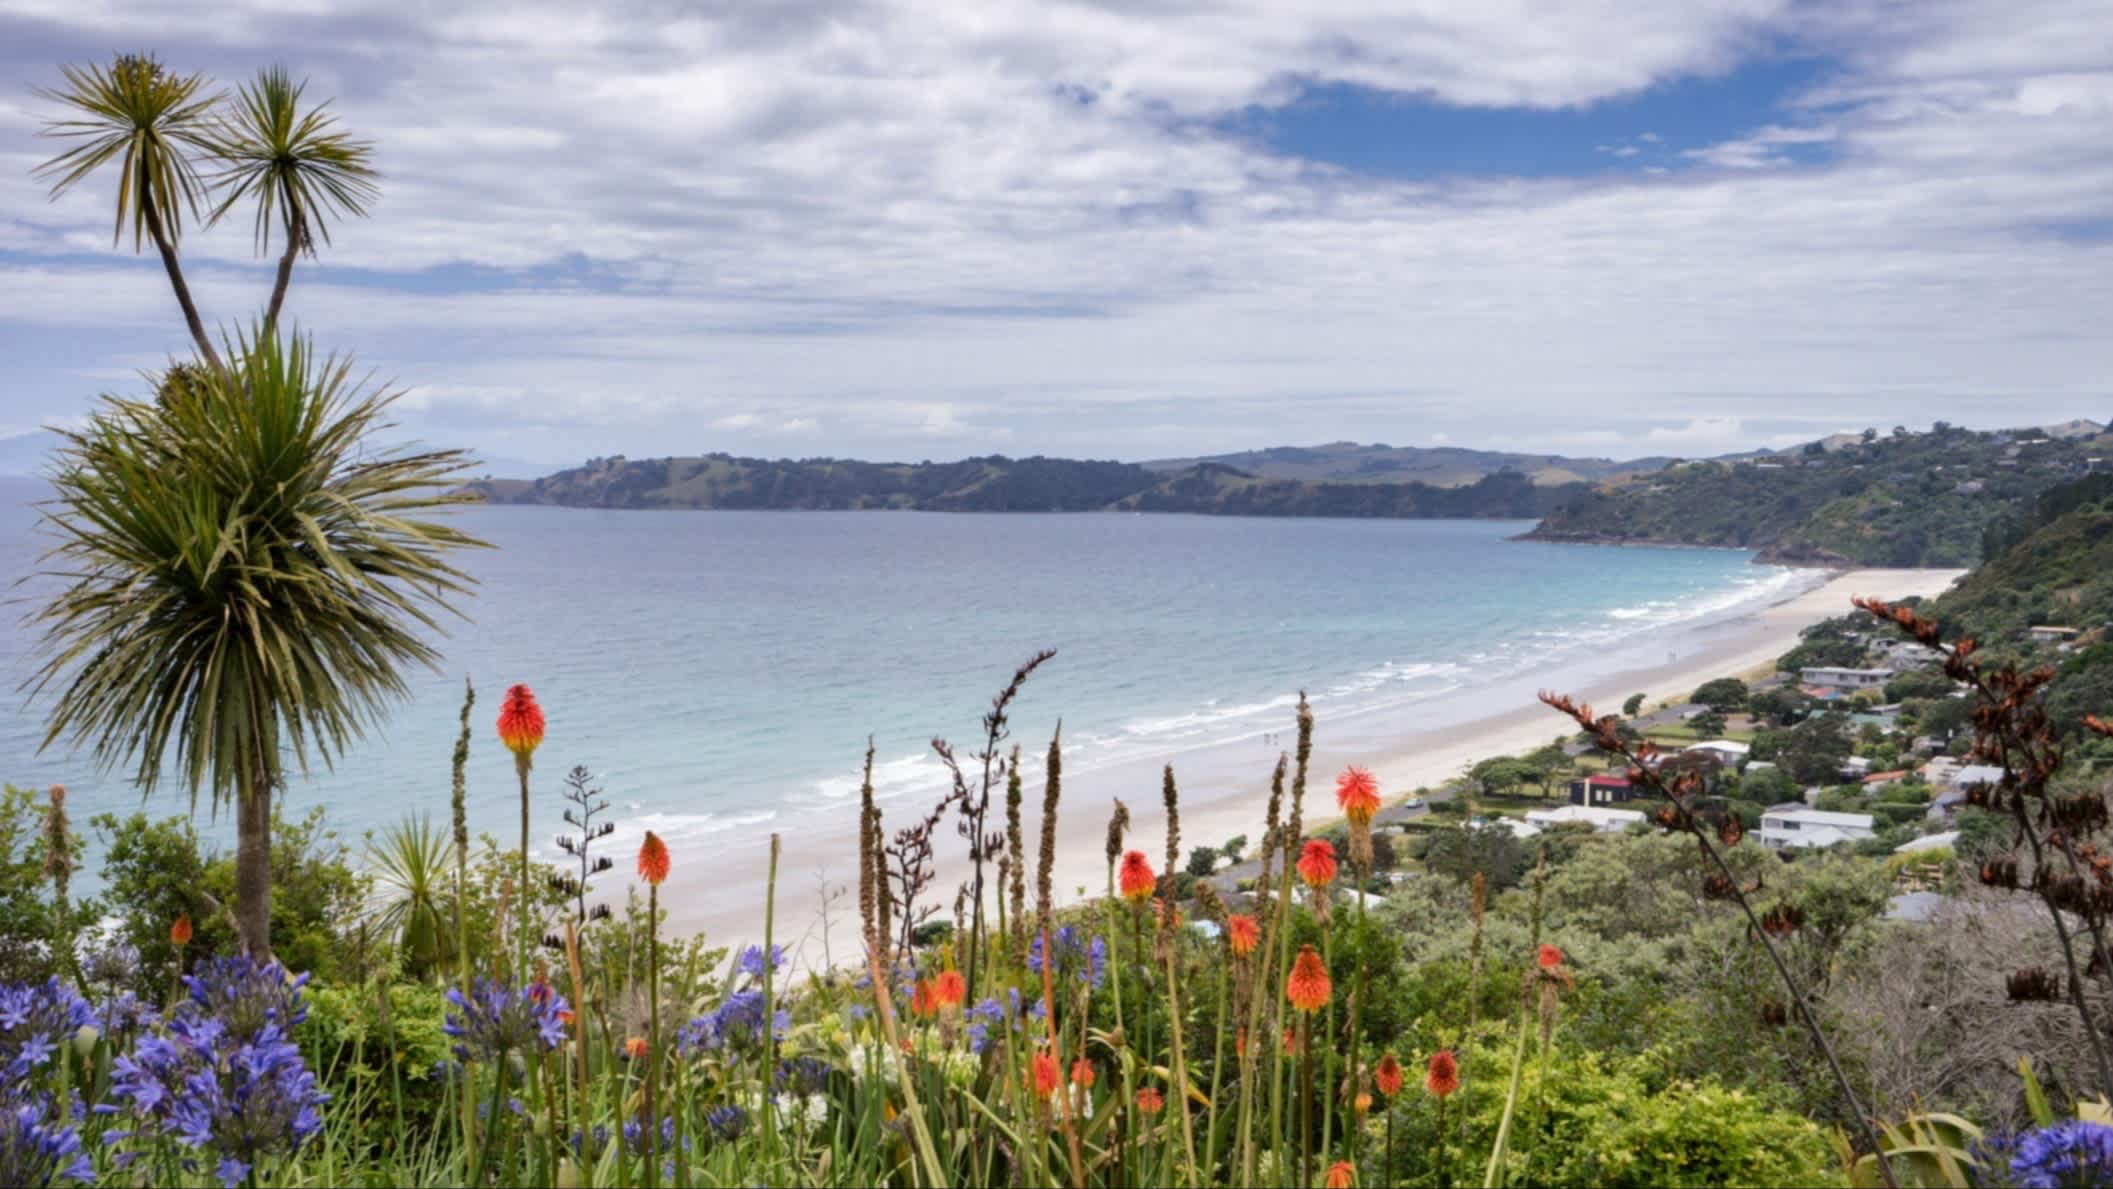 Ein Landschaftsfoto von Onetangi Beach, Waiheke Island, Neuseeland mit bunten Blumen im Bild und Überblick über die Bucht.
